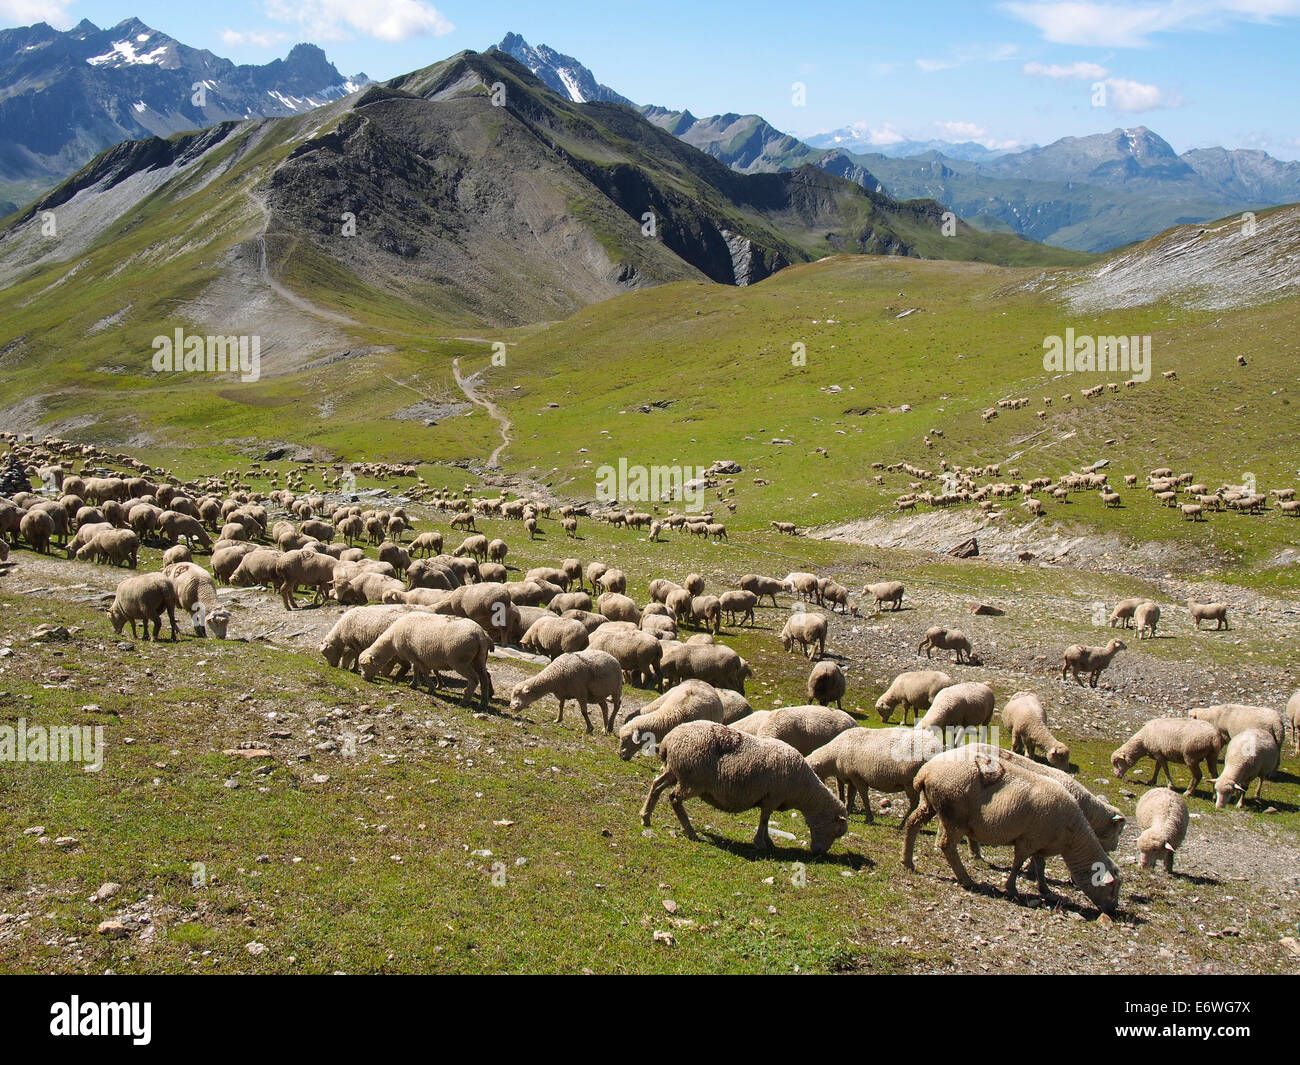 sheep, Col de la croix du Bonhomme, Alps, France Stock Photo